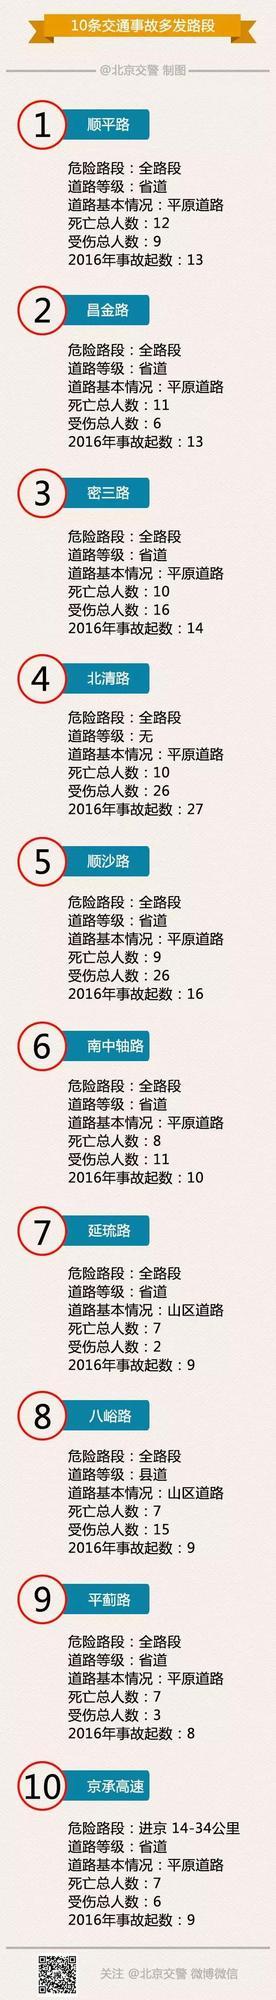 北京发布十大车祸路段 10条路一年88人车祸离世